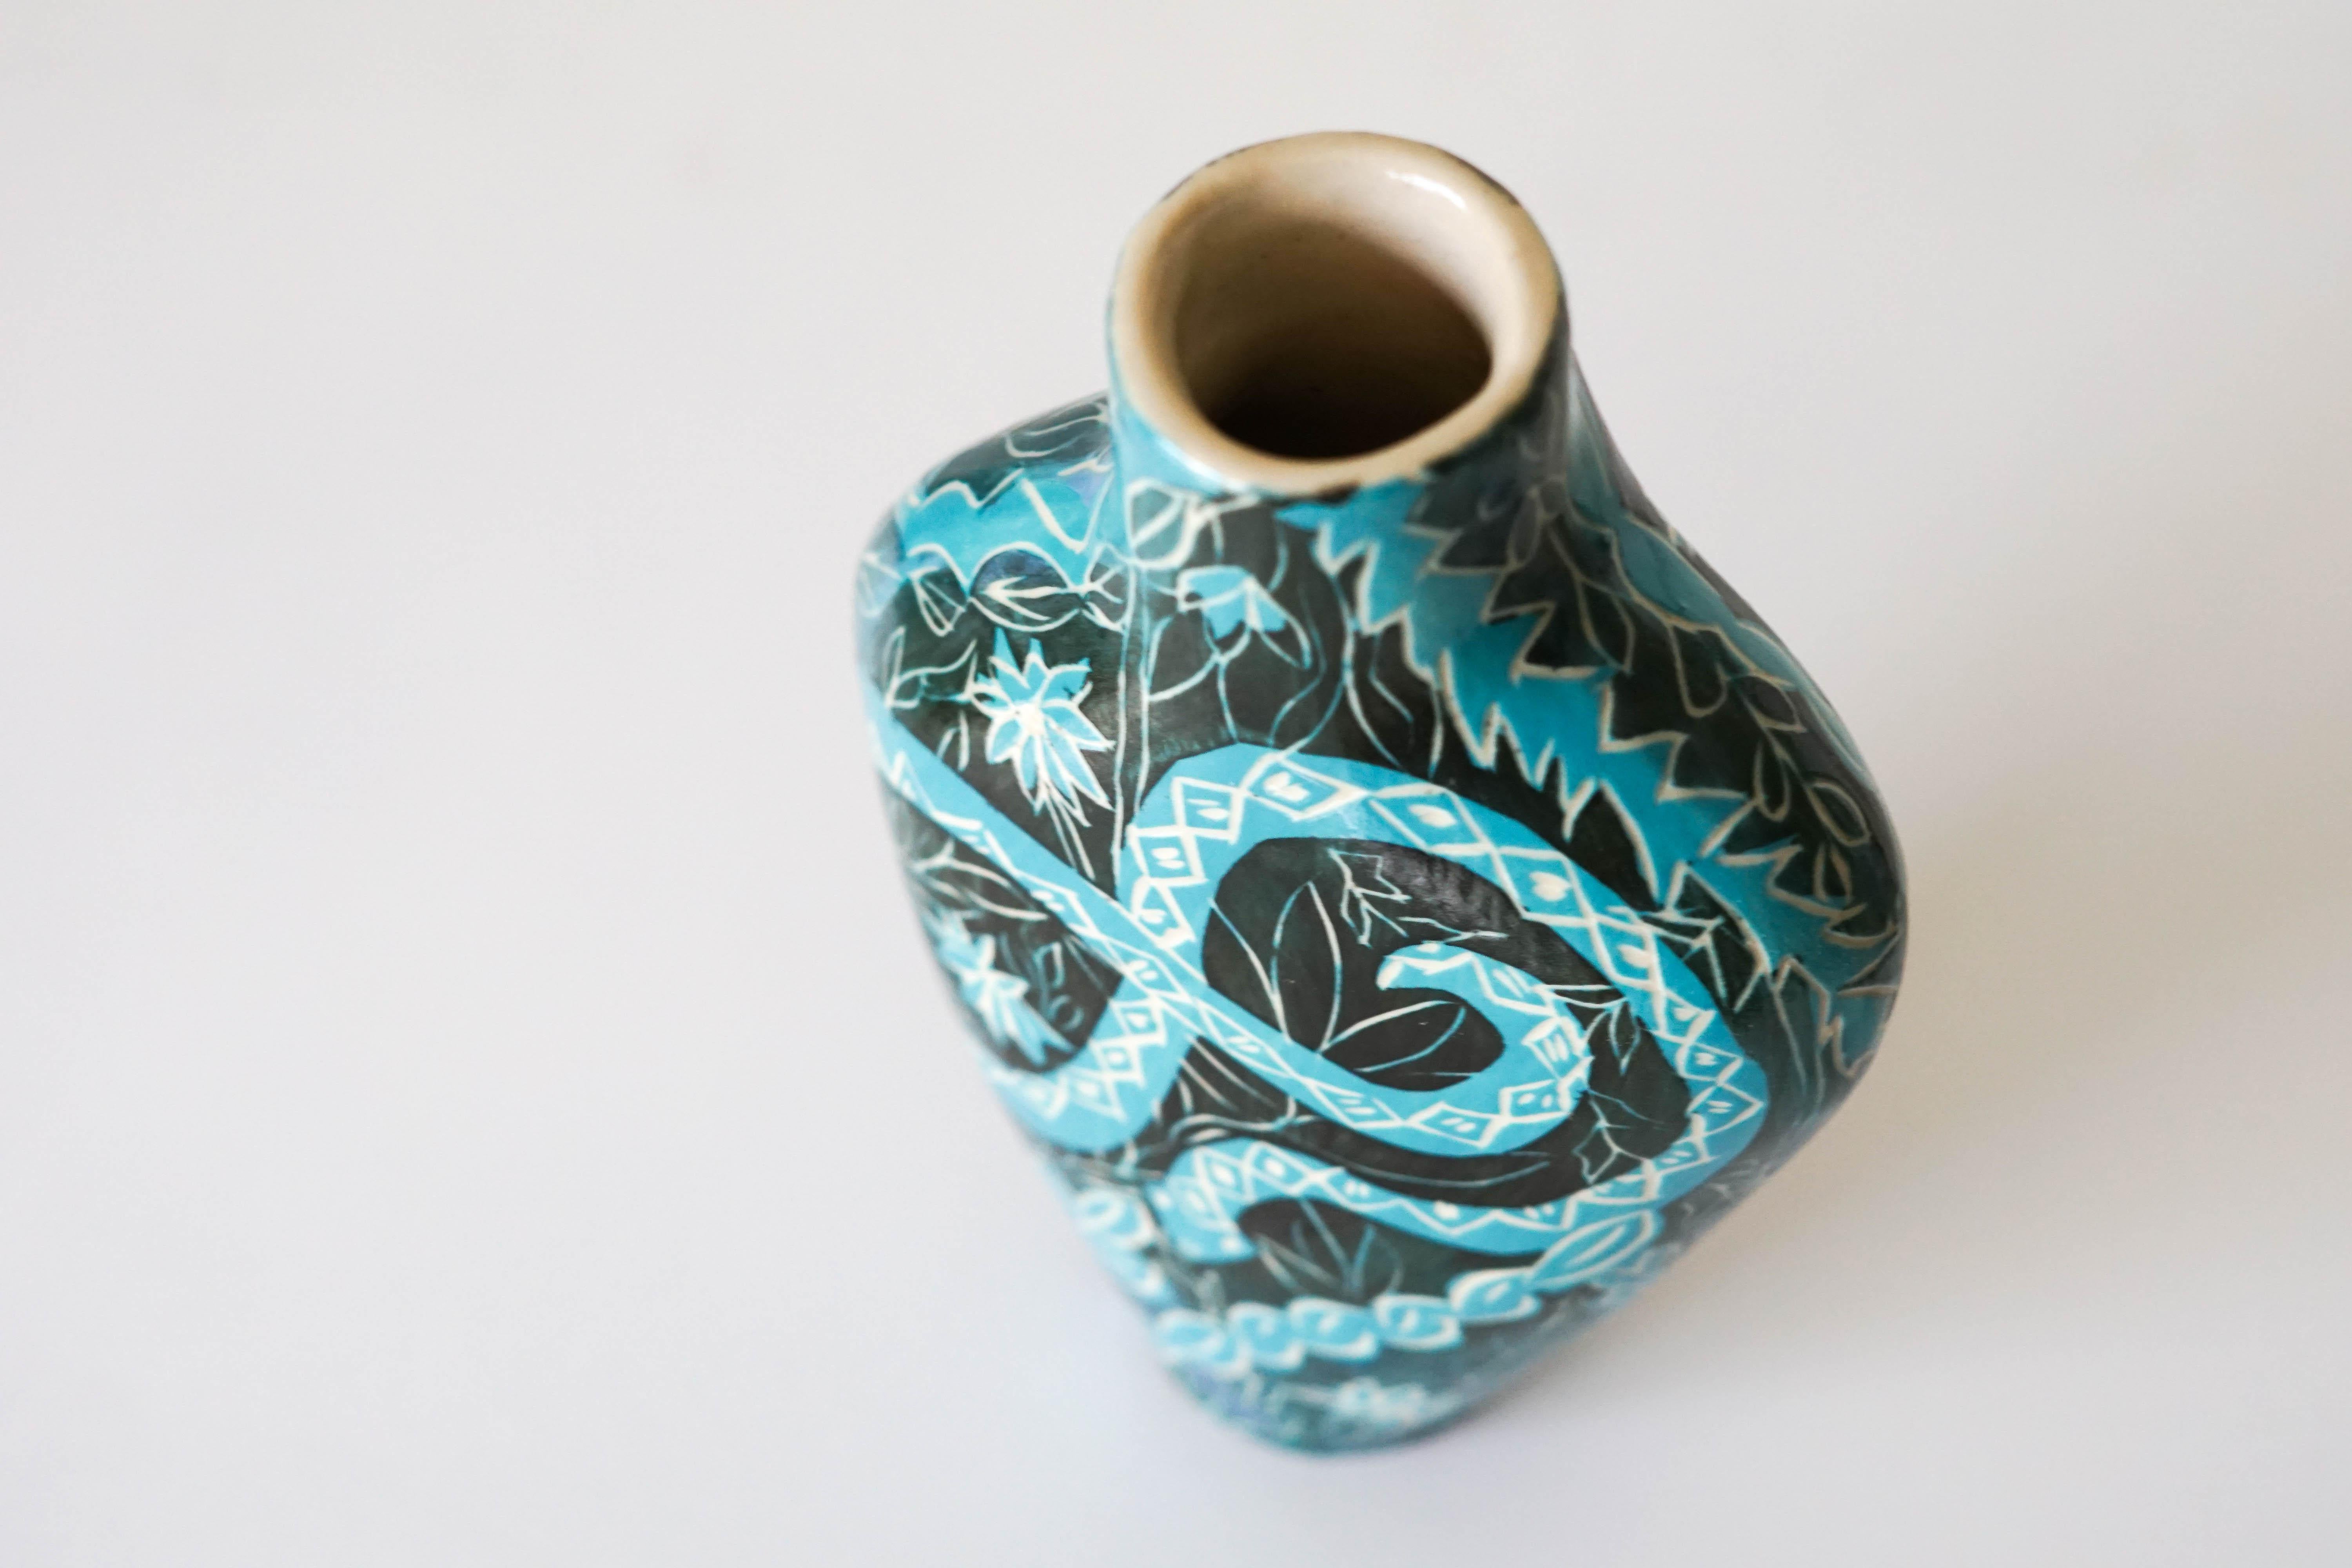 Charmante Schlangen
Keramikvase mit Unterglasur-Sgraffito-Details

Diese zierliche Keramikvase zeichnet sich durch helle, kühle Farben und Pflanzenformen aus, in deren Mittelpunkt sich Schlangen winden. Die Ästhetik des Dschungels unterstreicht die